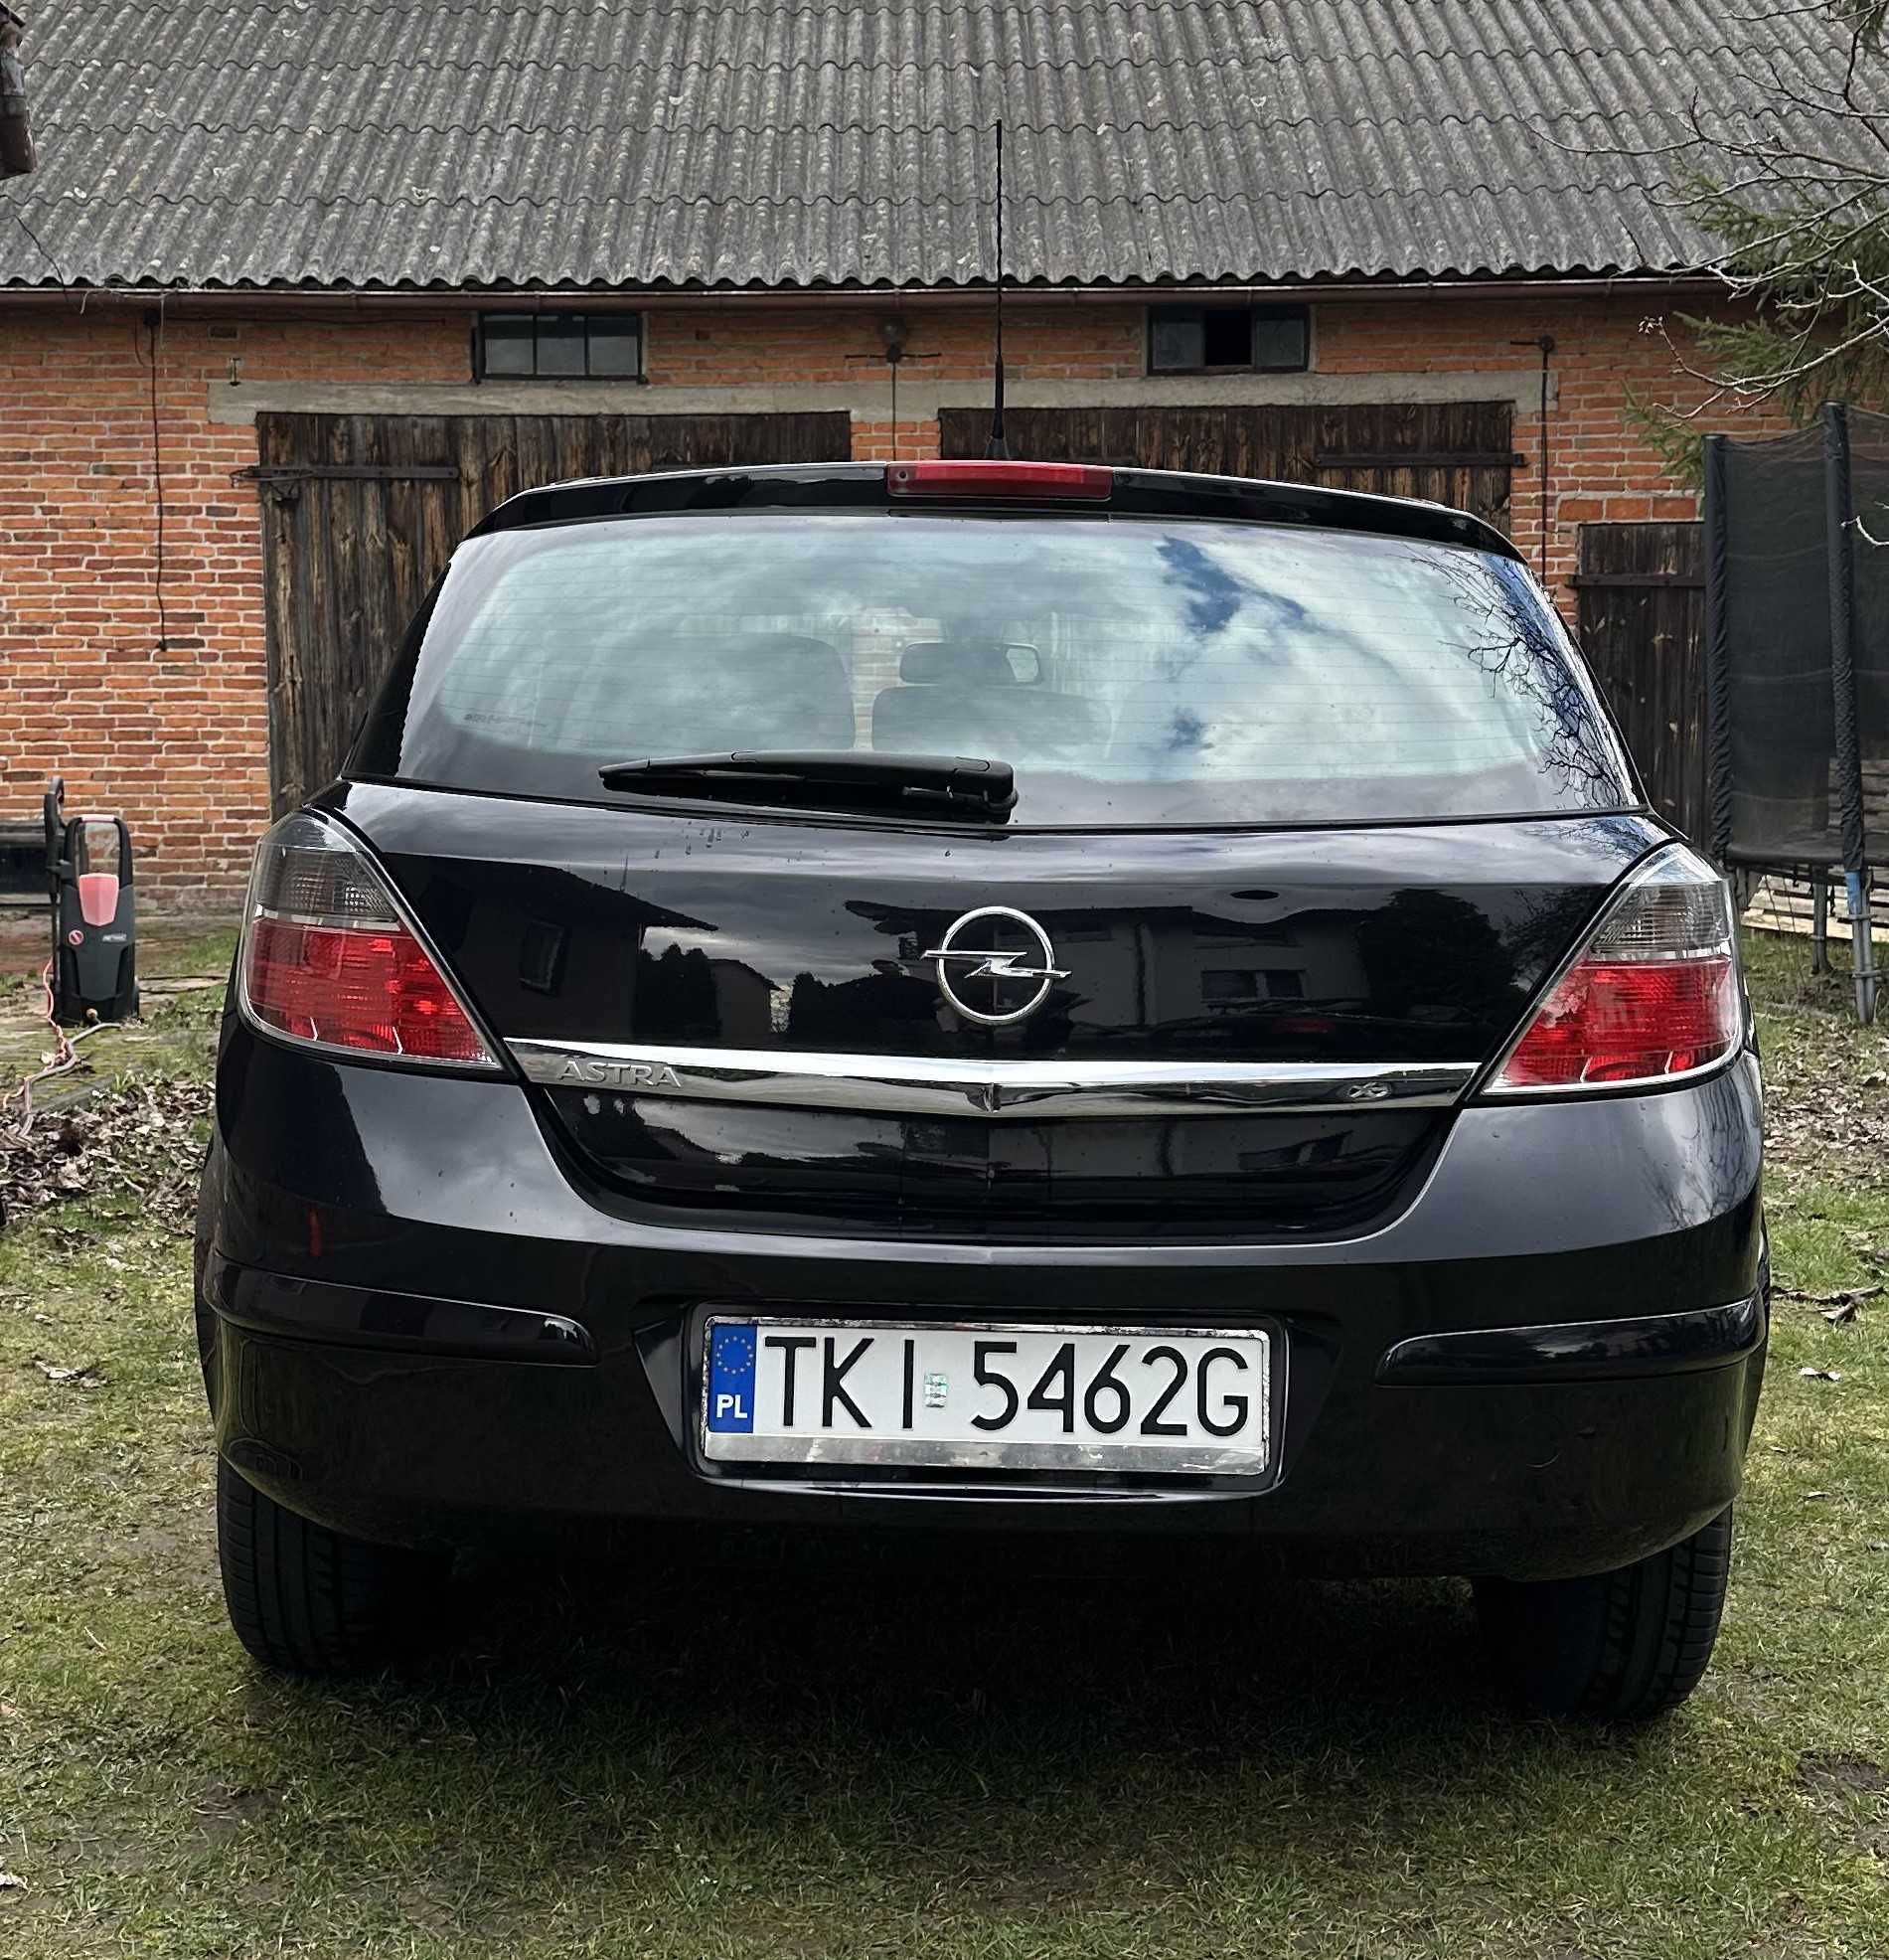 Samochód Opel Astra III H 1.4 2008r. benzyna 90KM czarny